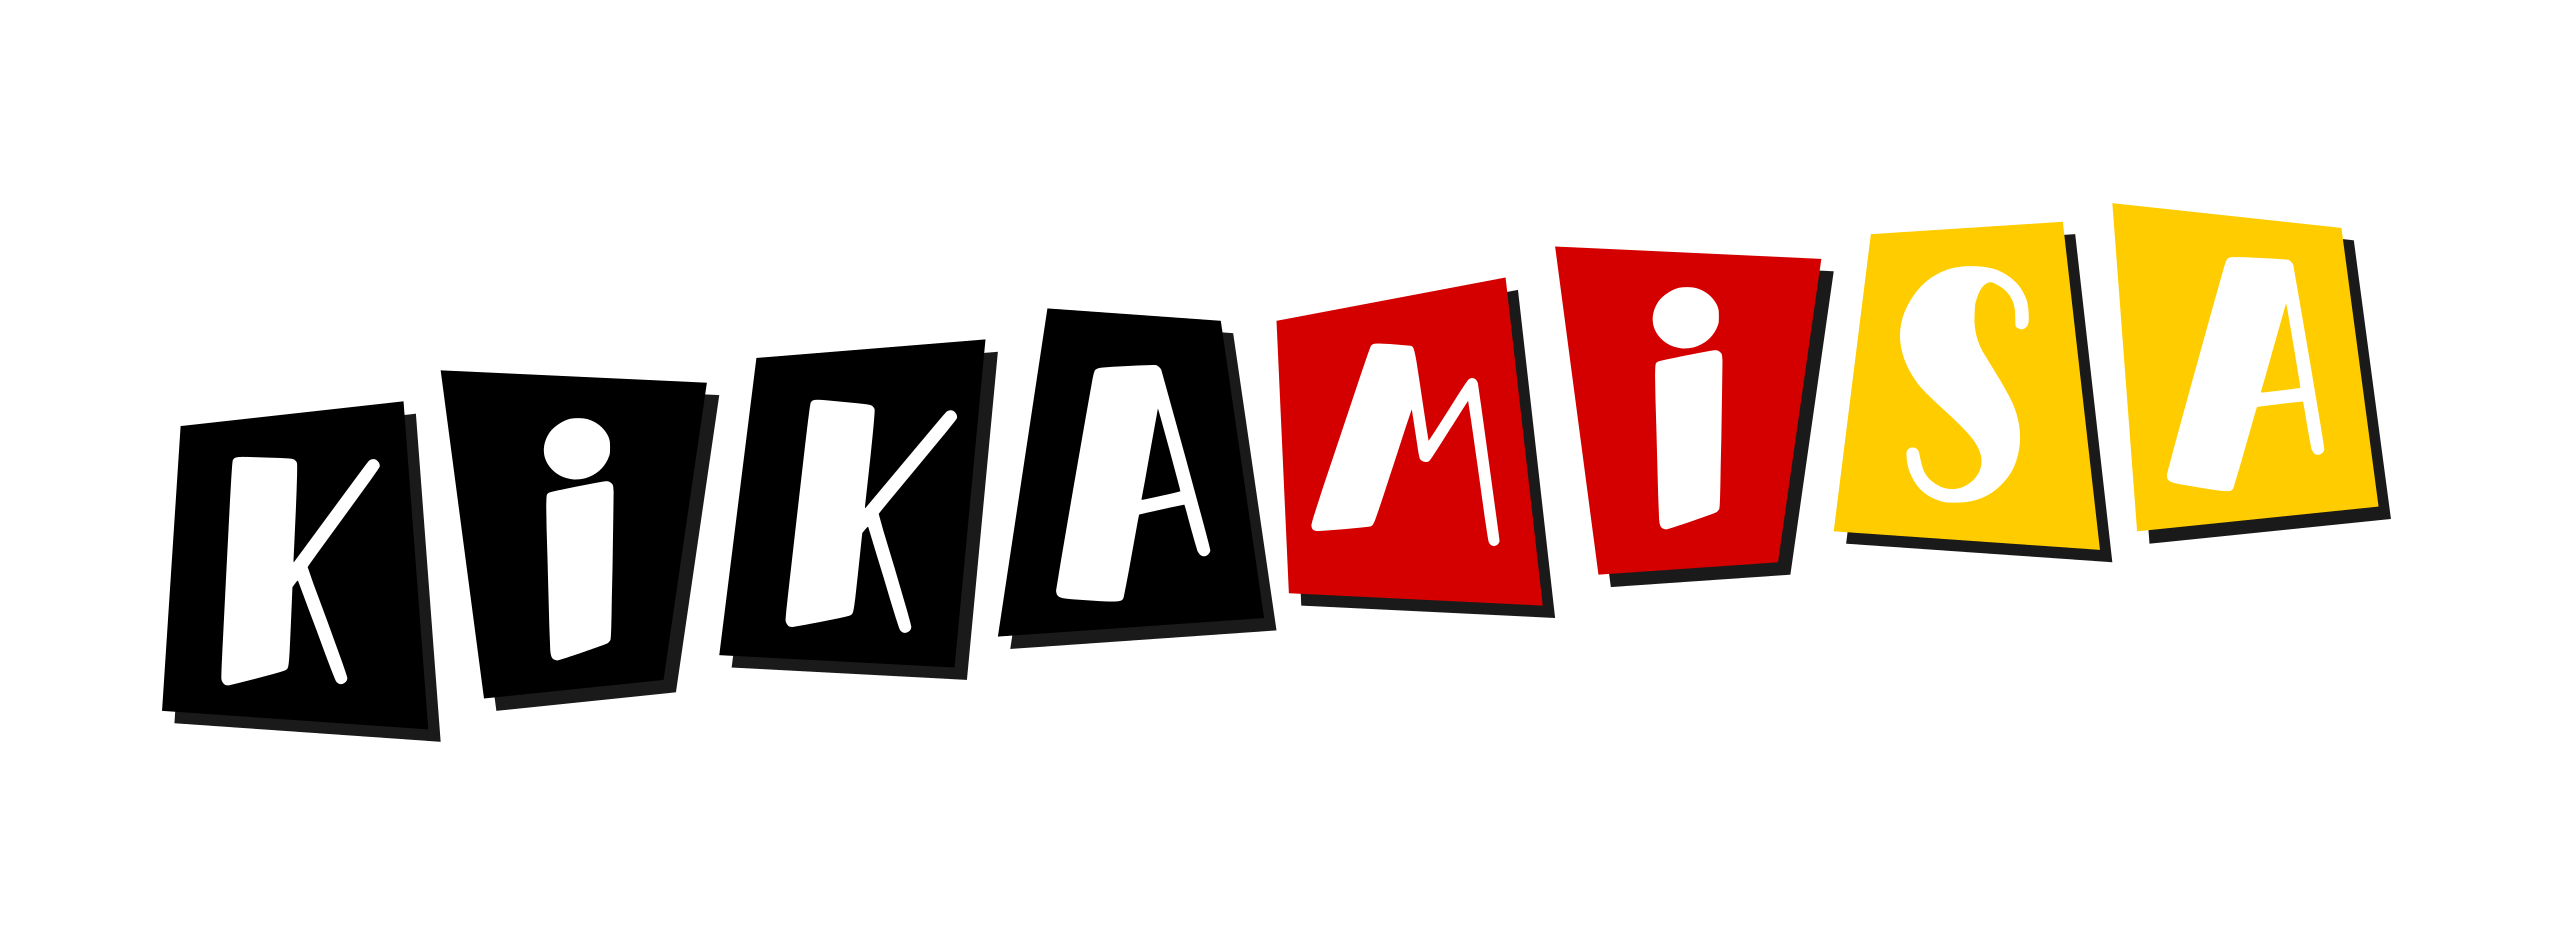 Logo Kikamisa